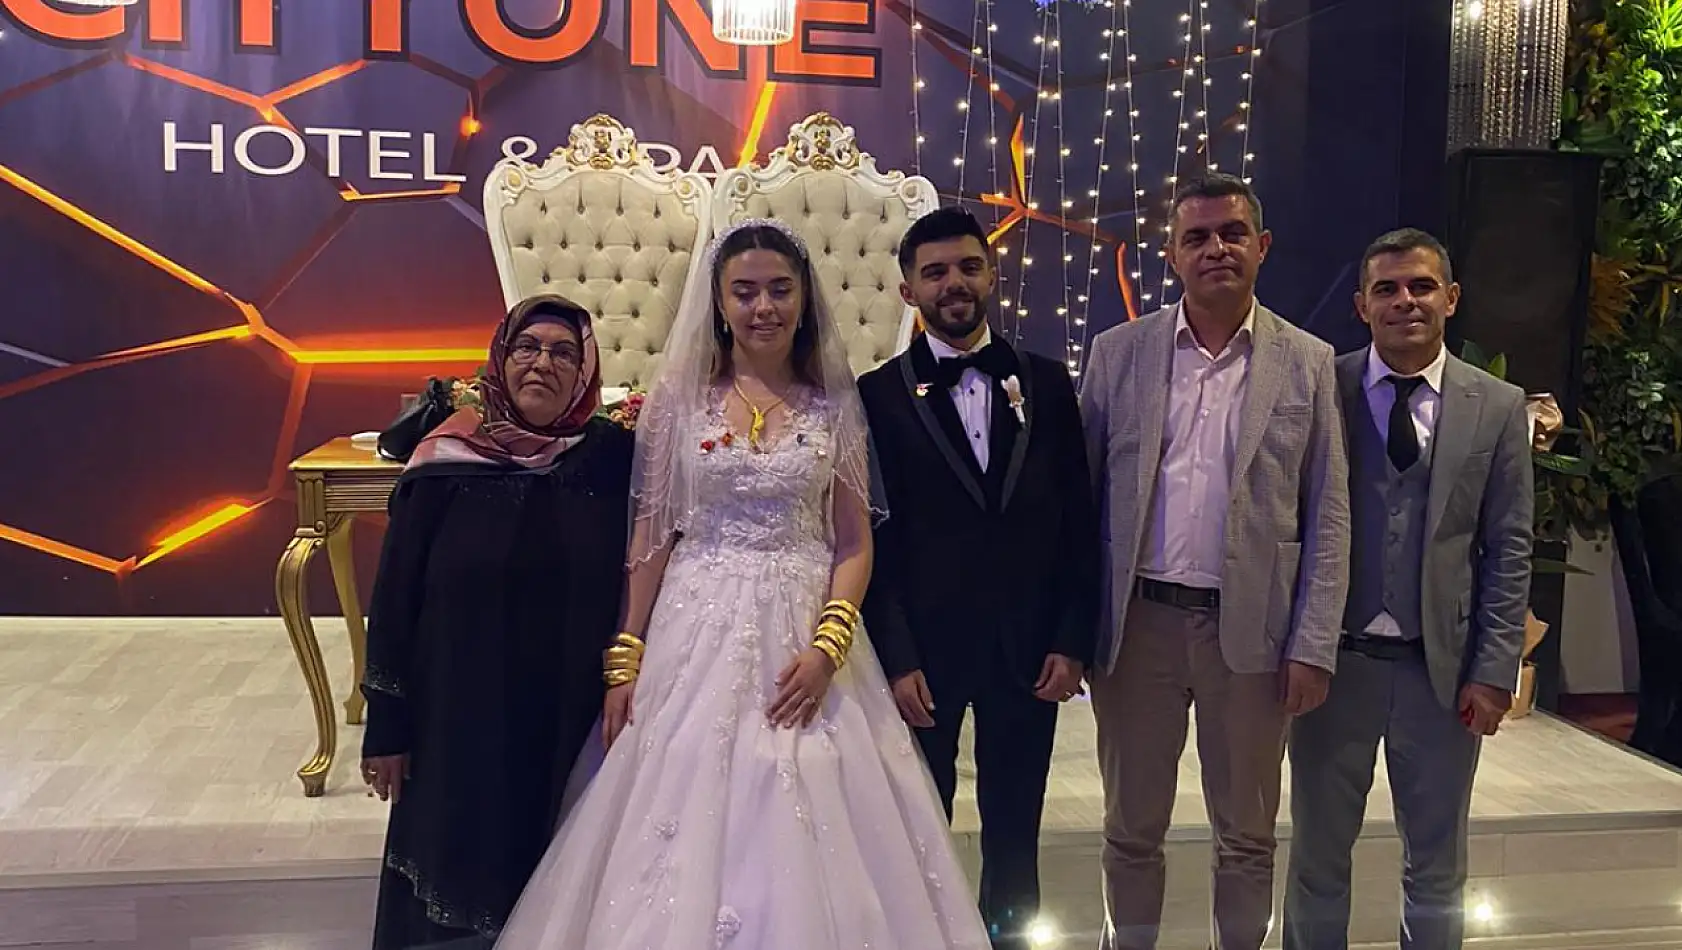 Kayseri'de aynı hastanede görev yapan Hemşireler evlendi!